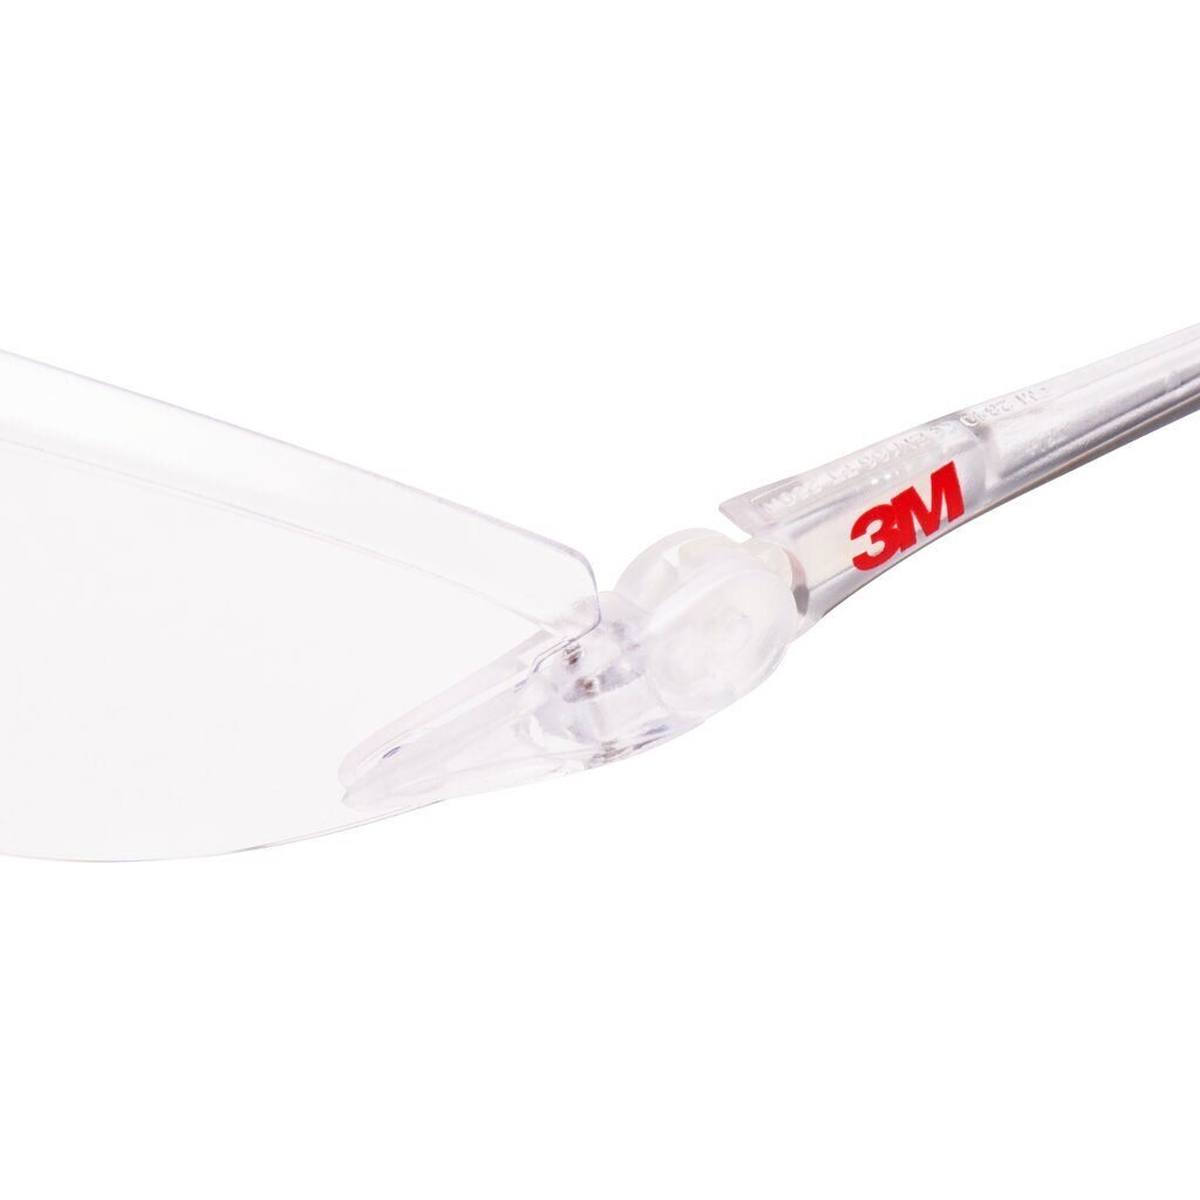 3M 2840 Gafas de protección AS/AF/UV, PC, transparentes, patillas ajustables en longitud e inclinación, terminales blandos